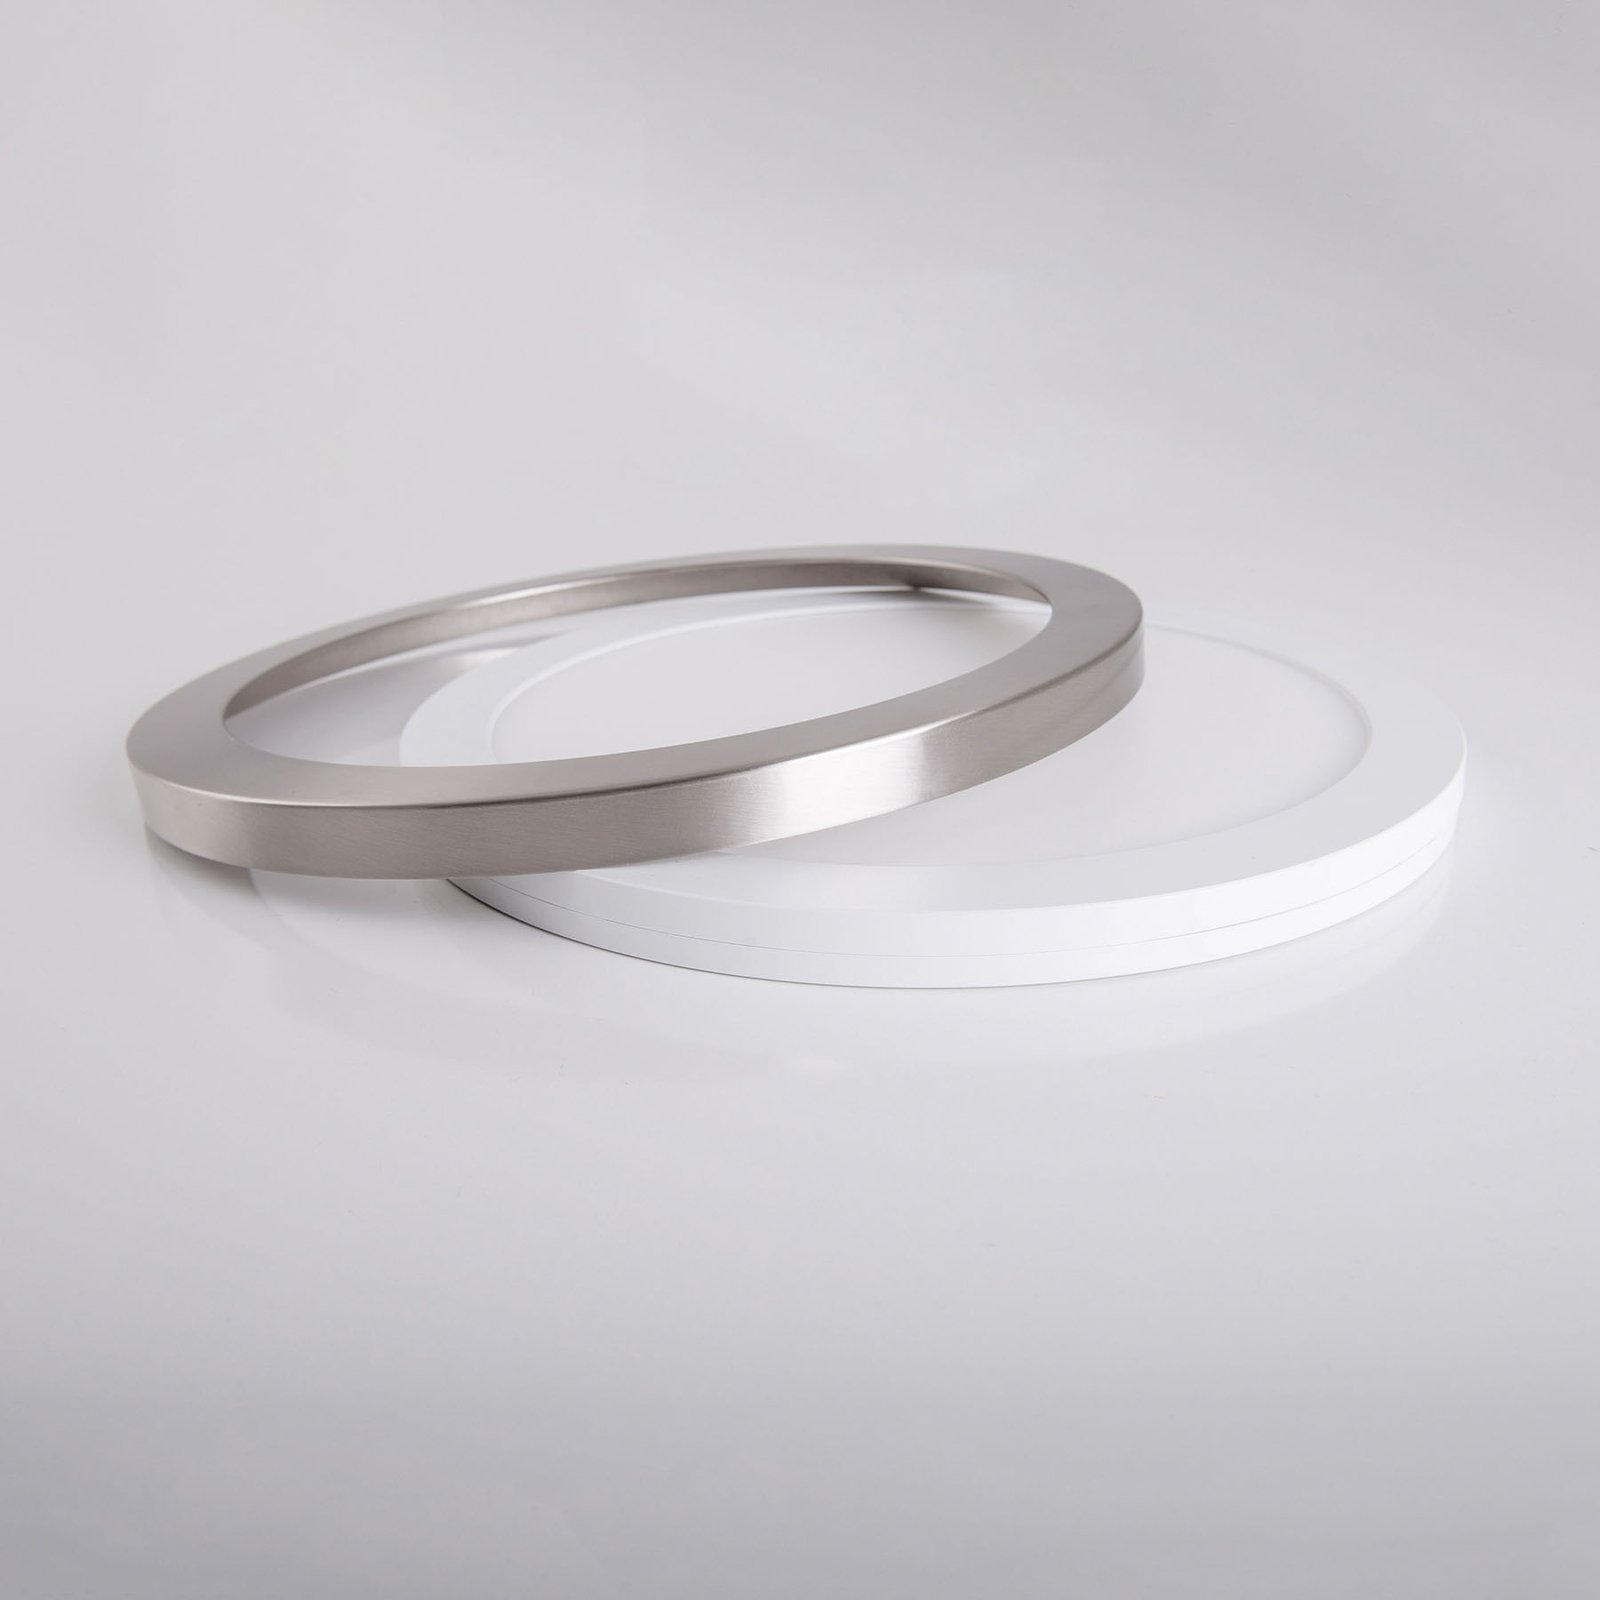 LED plafondlamp Bonus, magnetische ring Ø 33 cm